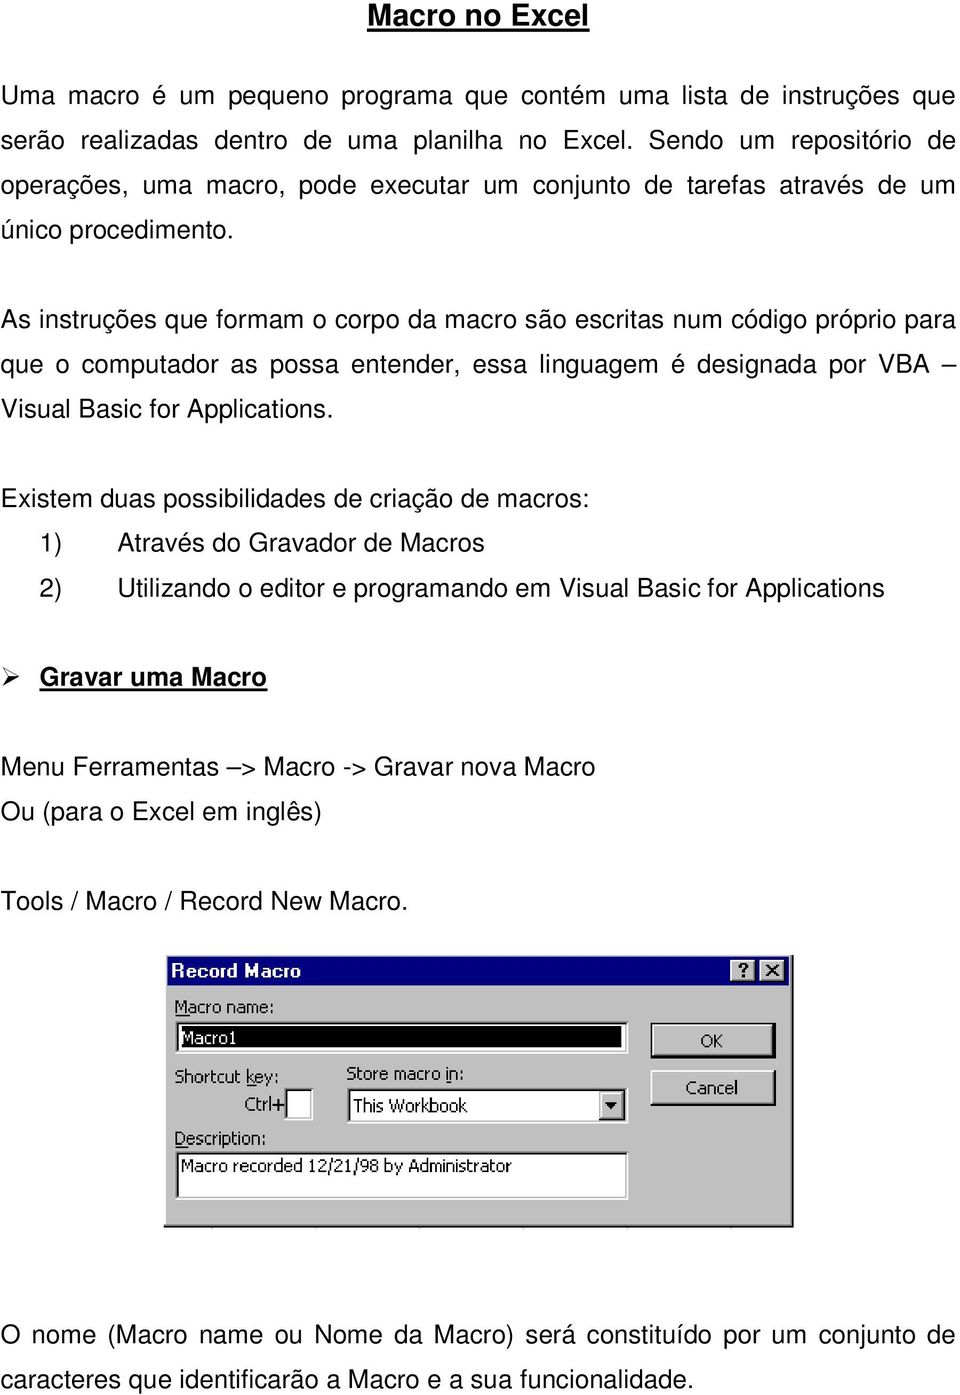 As instruções que formam o corpo da macro são escritas num código próprio para que o computador as possa entender, essa linguagem é designada por VBA Visual Basic for Applications.